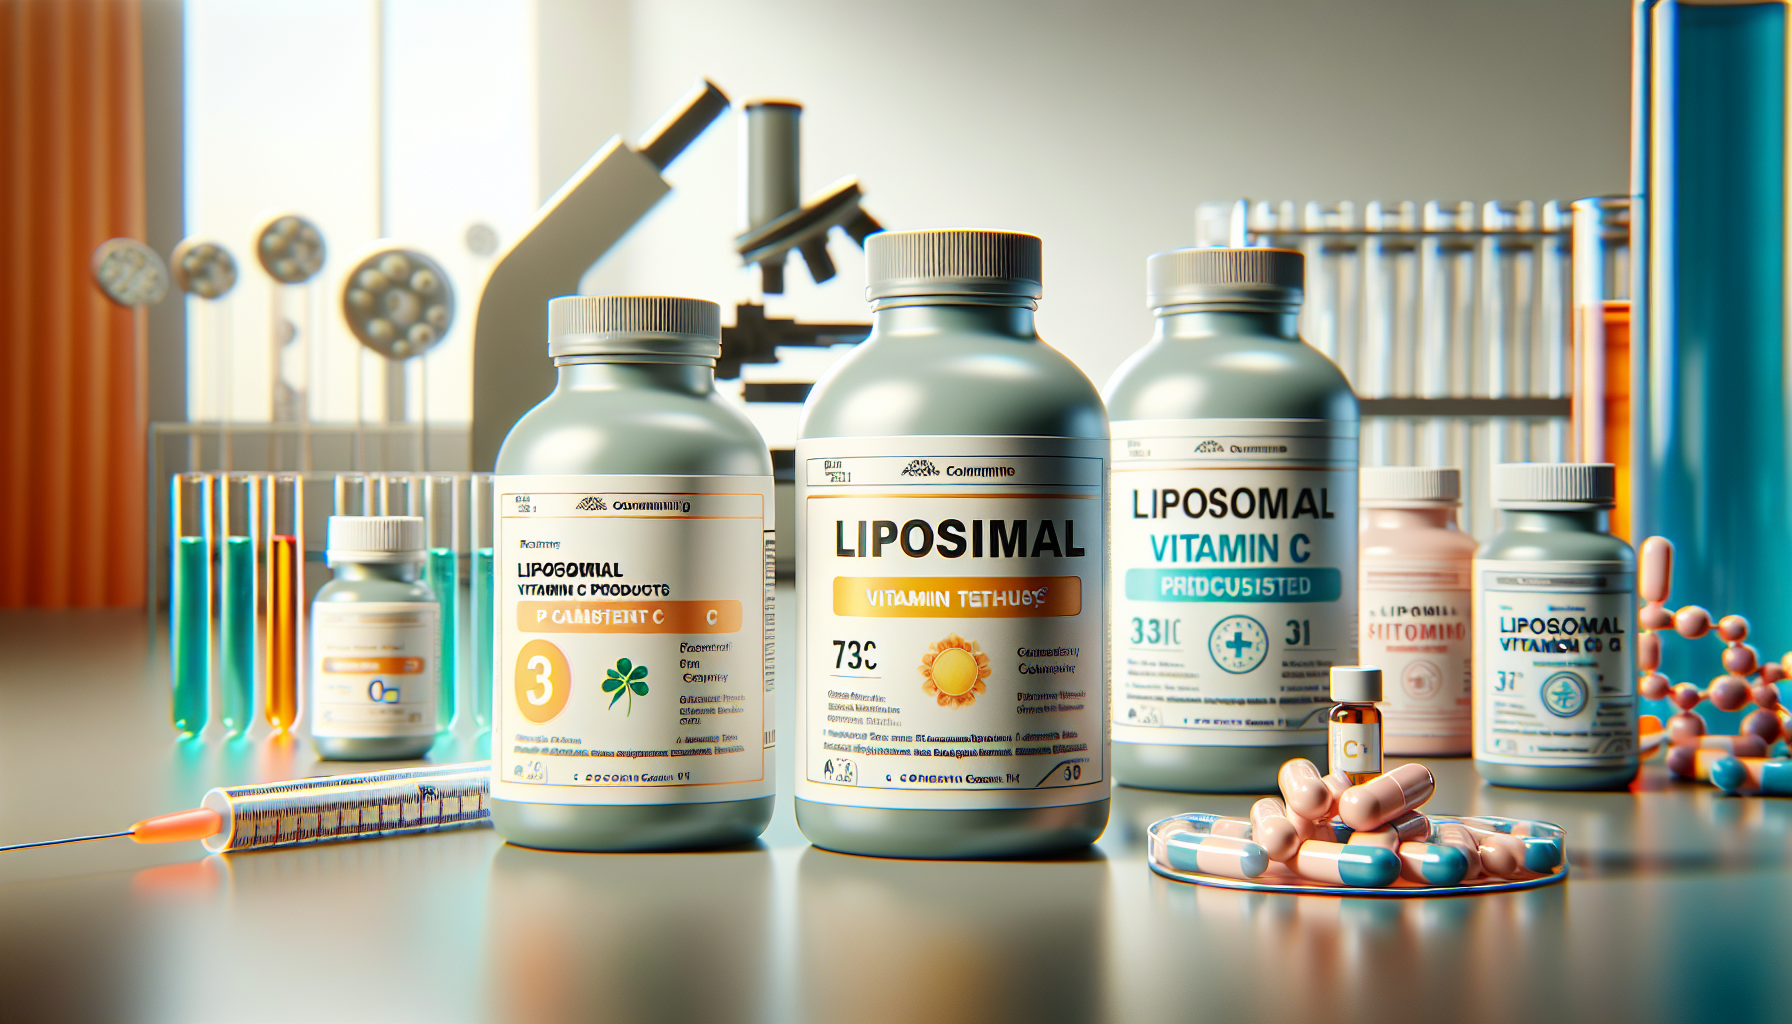 Die Top 3 der liposomalen Vitamin C-Produkte im Test